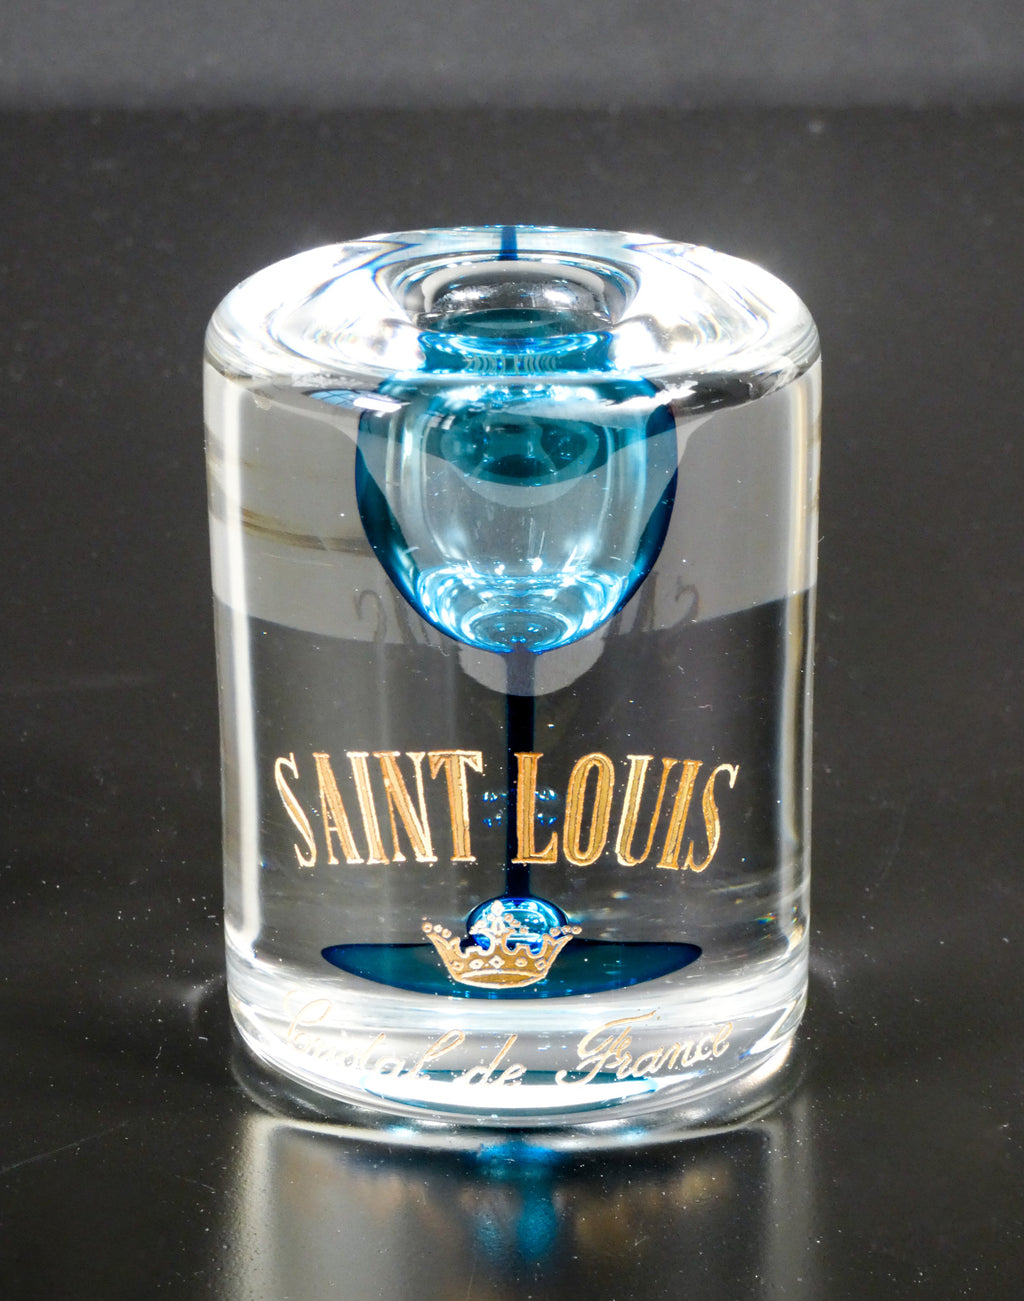 scultura cristallo saint louis cristal de france 1960 promozionale pubblicitaria